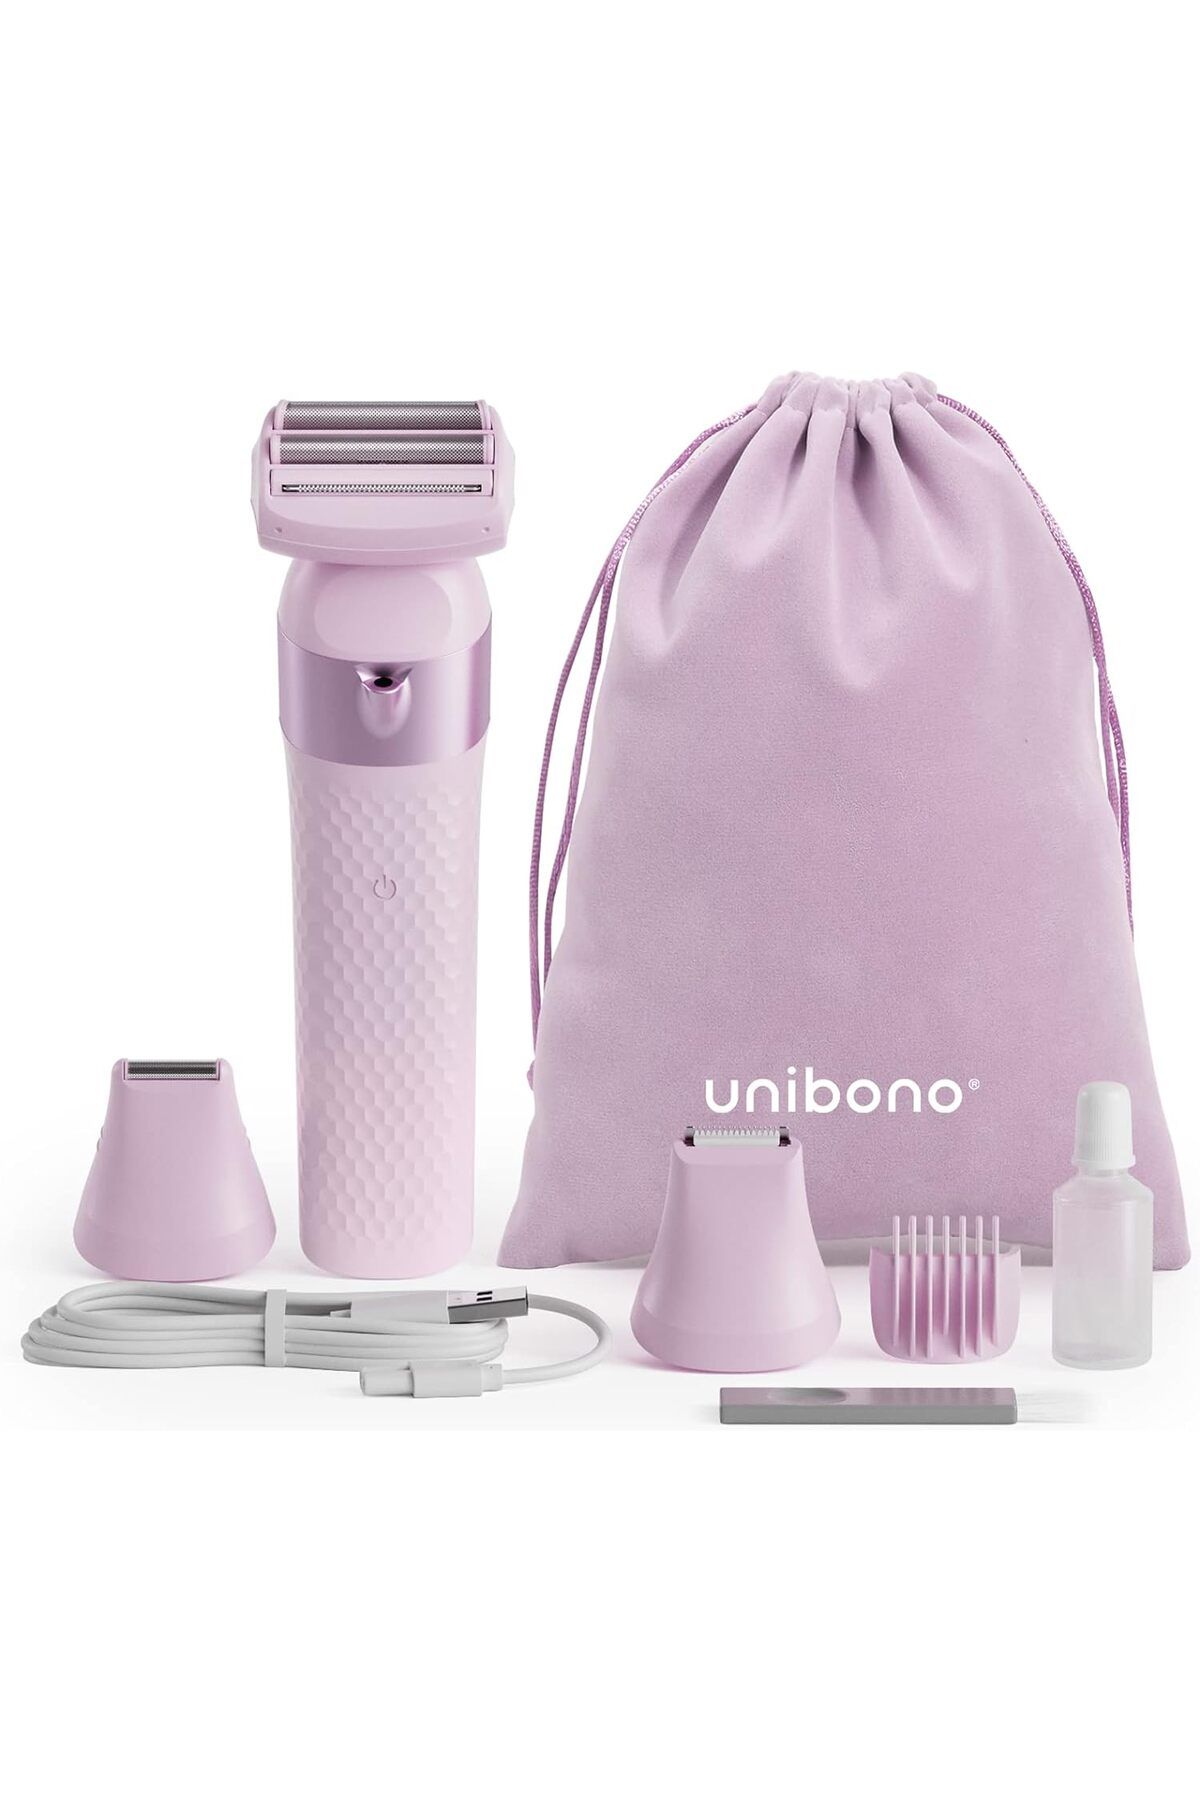 Unibono Ladyshaver Kadın Tıraş Makinesi, Bikini Tıraş Makinesi, Islak ve Kuru, Şarj Edilebilir